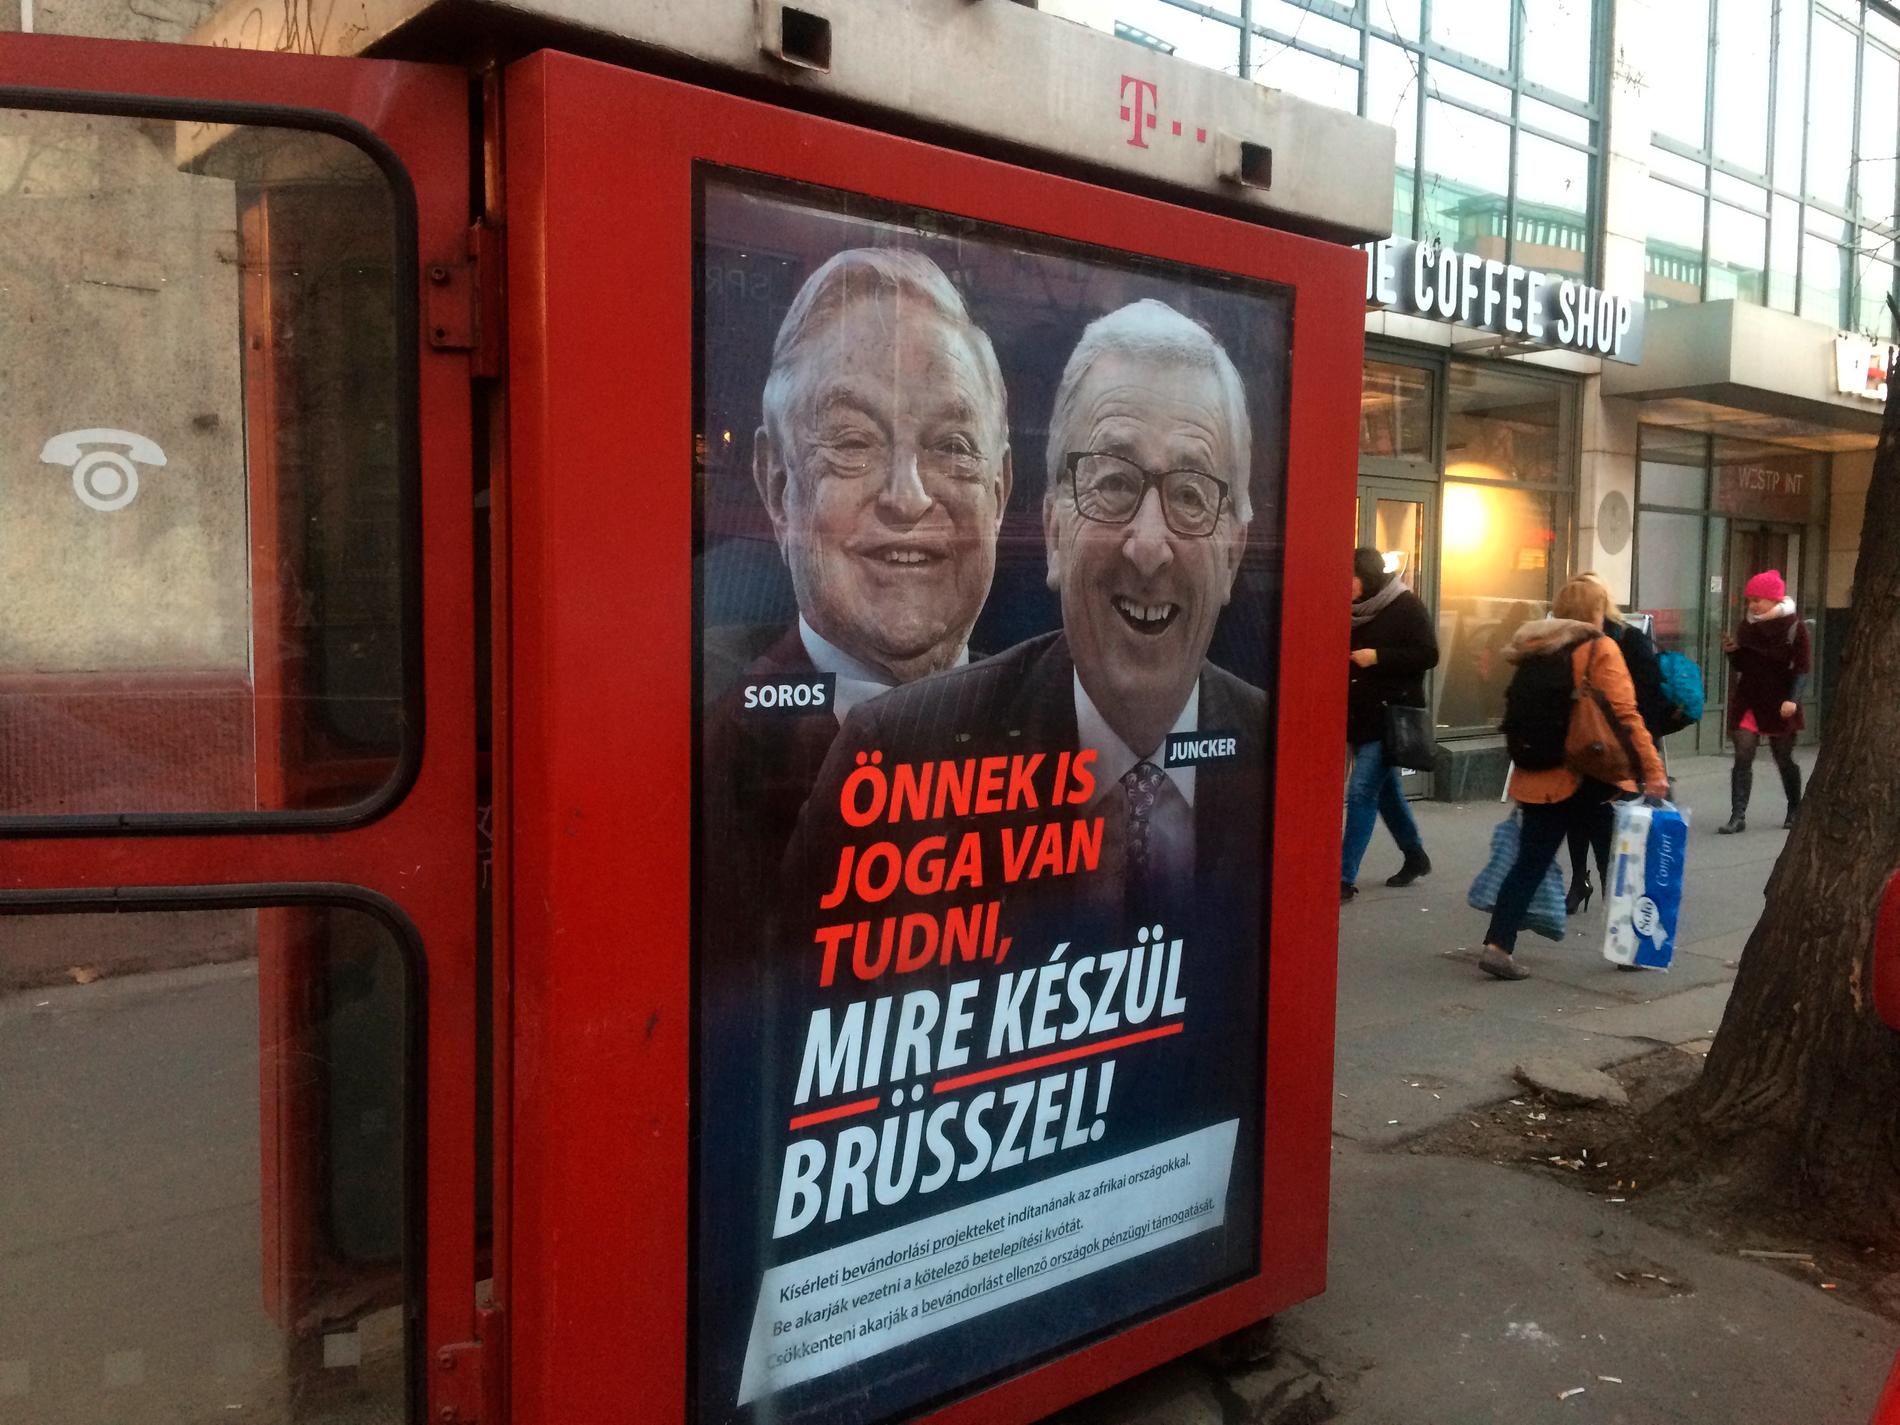 "Ni har rätt att veta vad Bryssel planerar", lyder affischtexten på den ungerska regeringens kampanj mot EU-kommissionens ordförande Jean-Claude Juncker och den ungersk-amerikanske affärsmannen George Soros.